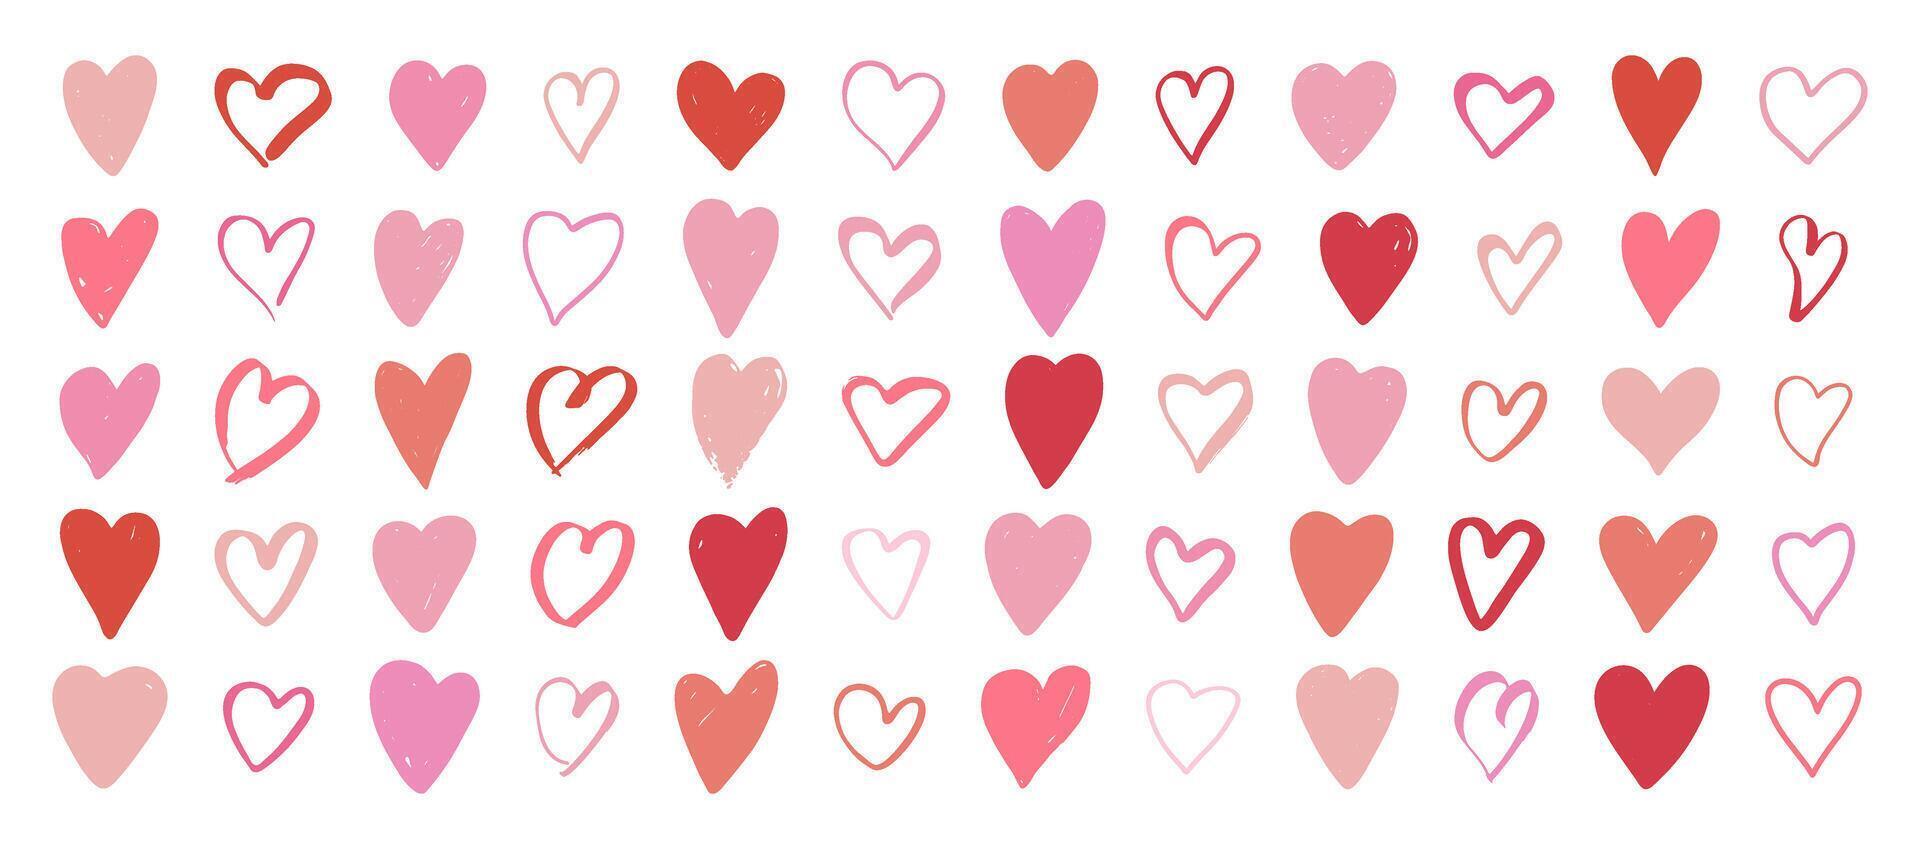 harten groot set, rood, roze kleuren. symbolen van Valentijnsdag dag, liefde, romantisch. hand getekend harten verzameling, vector illustratie